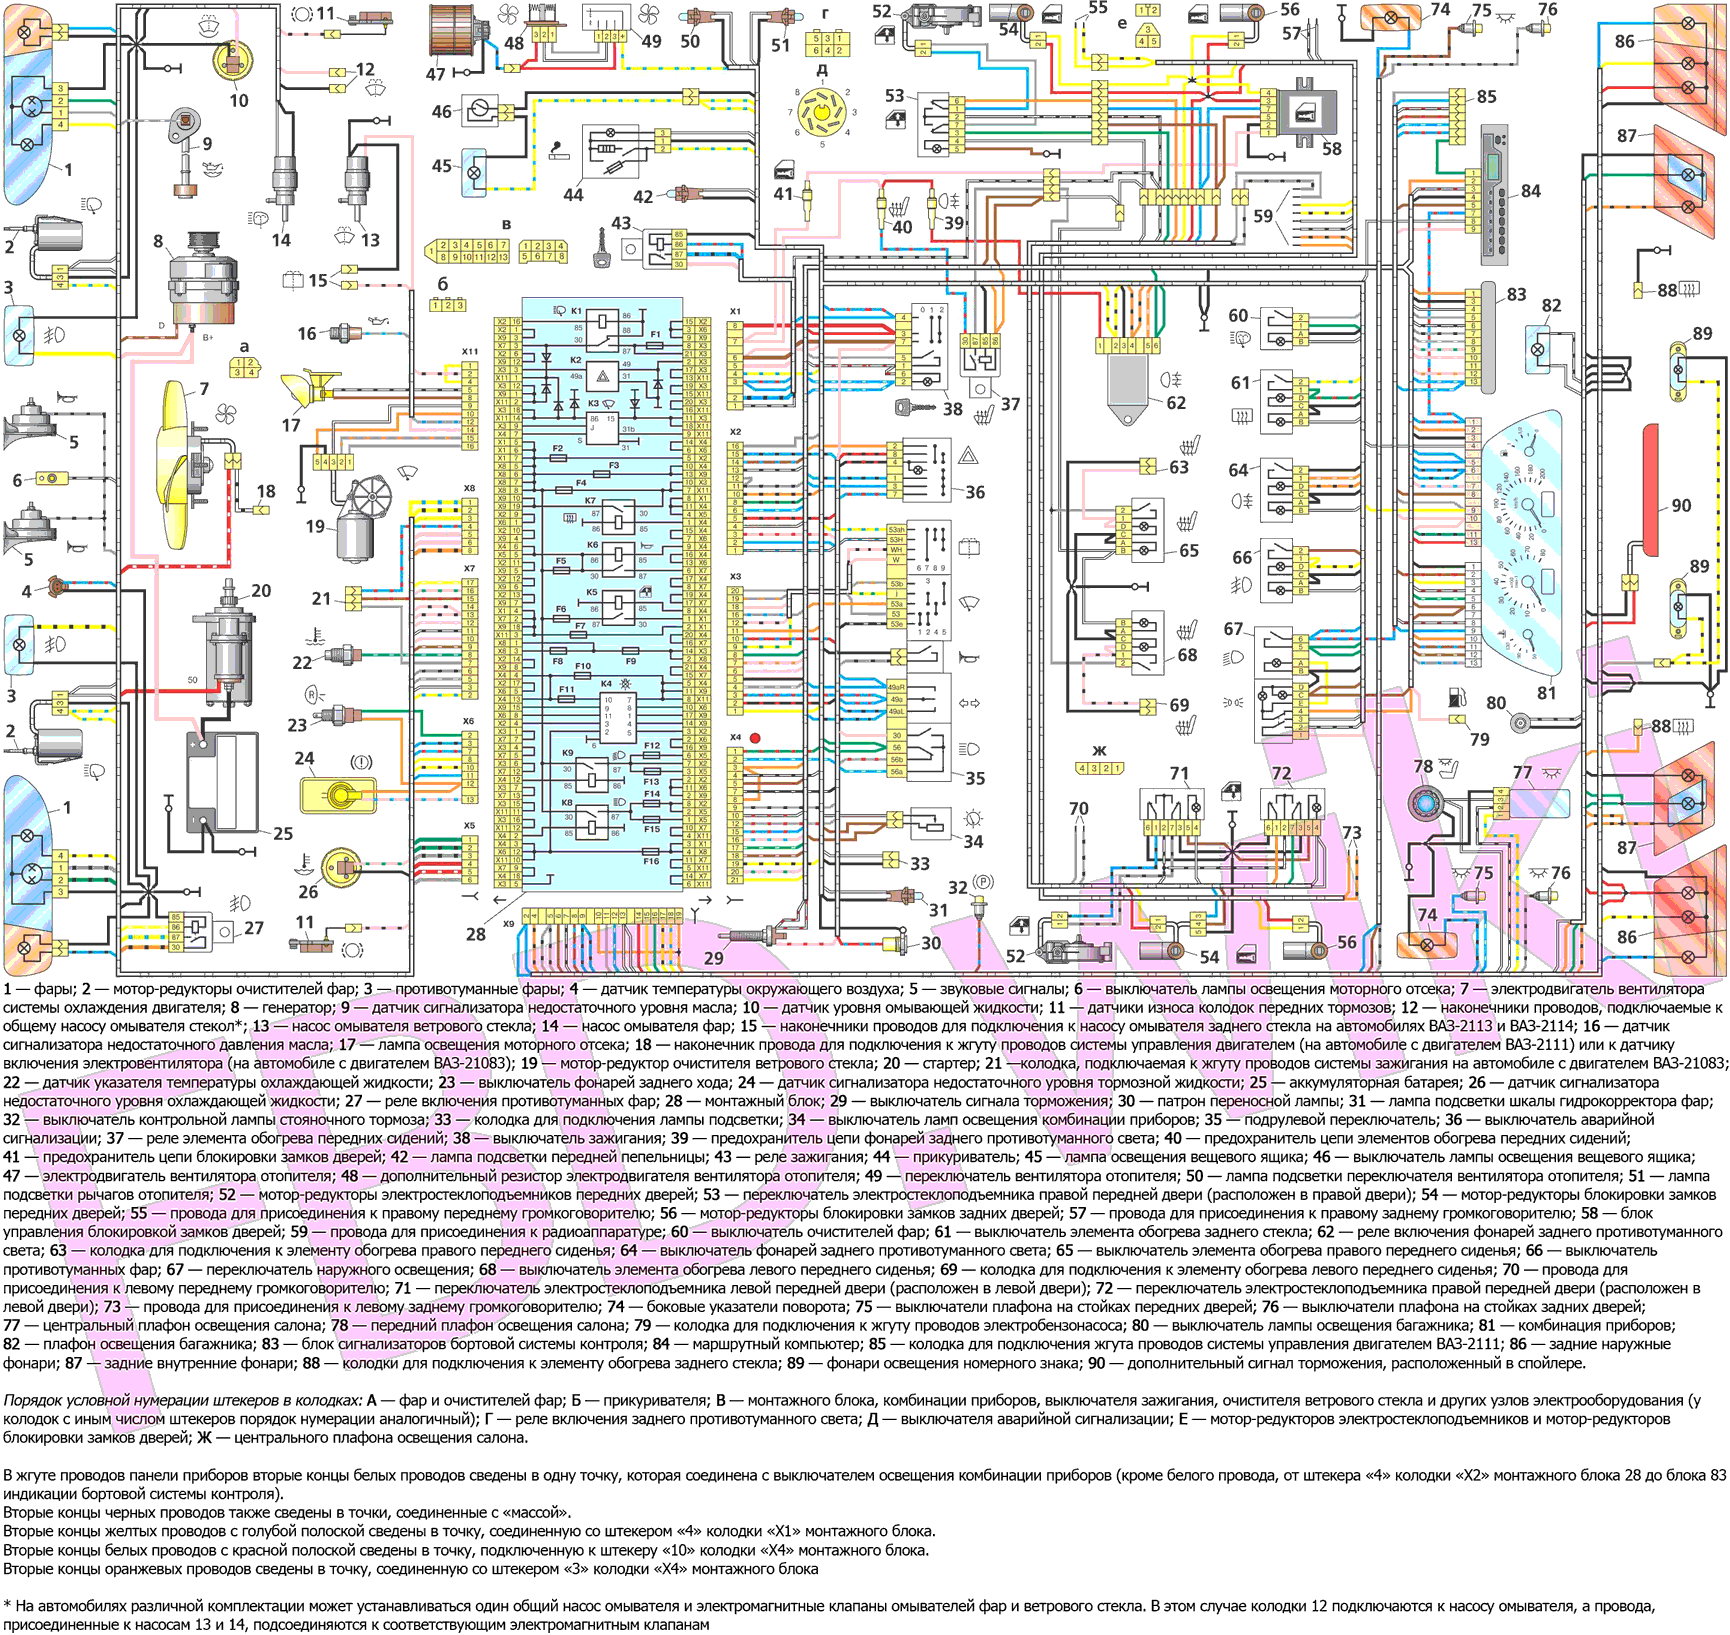 Схема подключения тахометра на ваз 2106, 2107, 2109, 2110, 2013 - одометры, спидометры - статьи